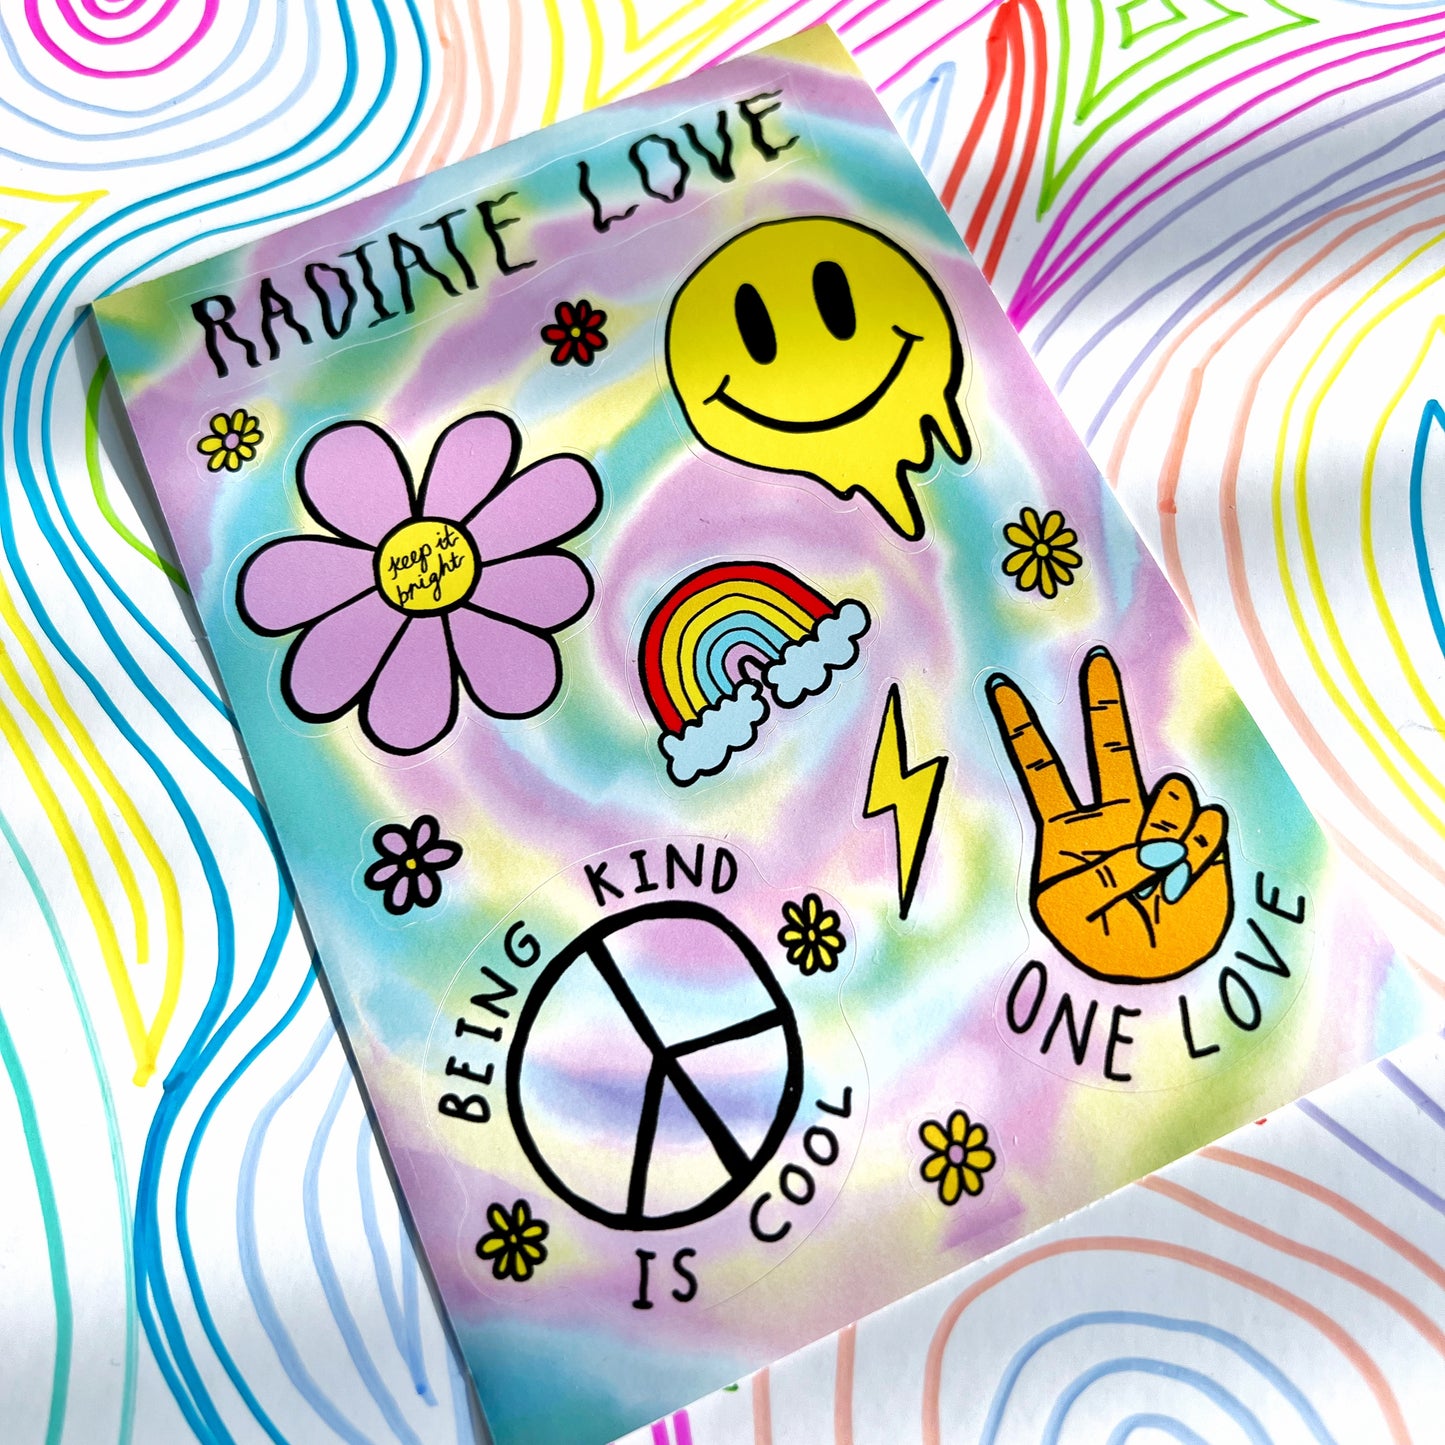 hippie heart - A6 vinyl sticker sheet